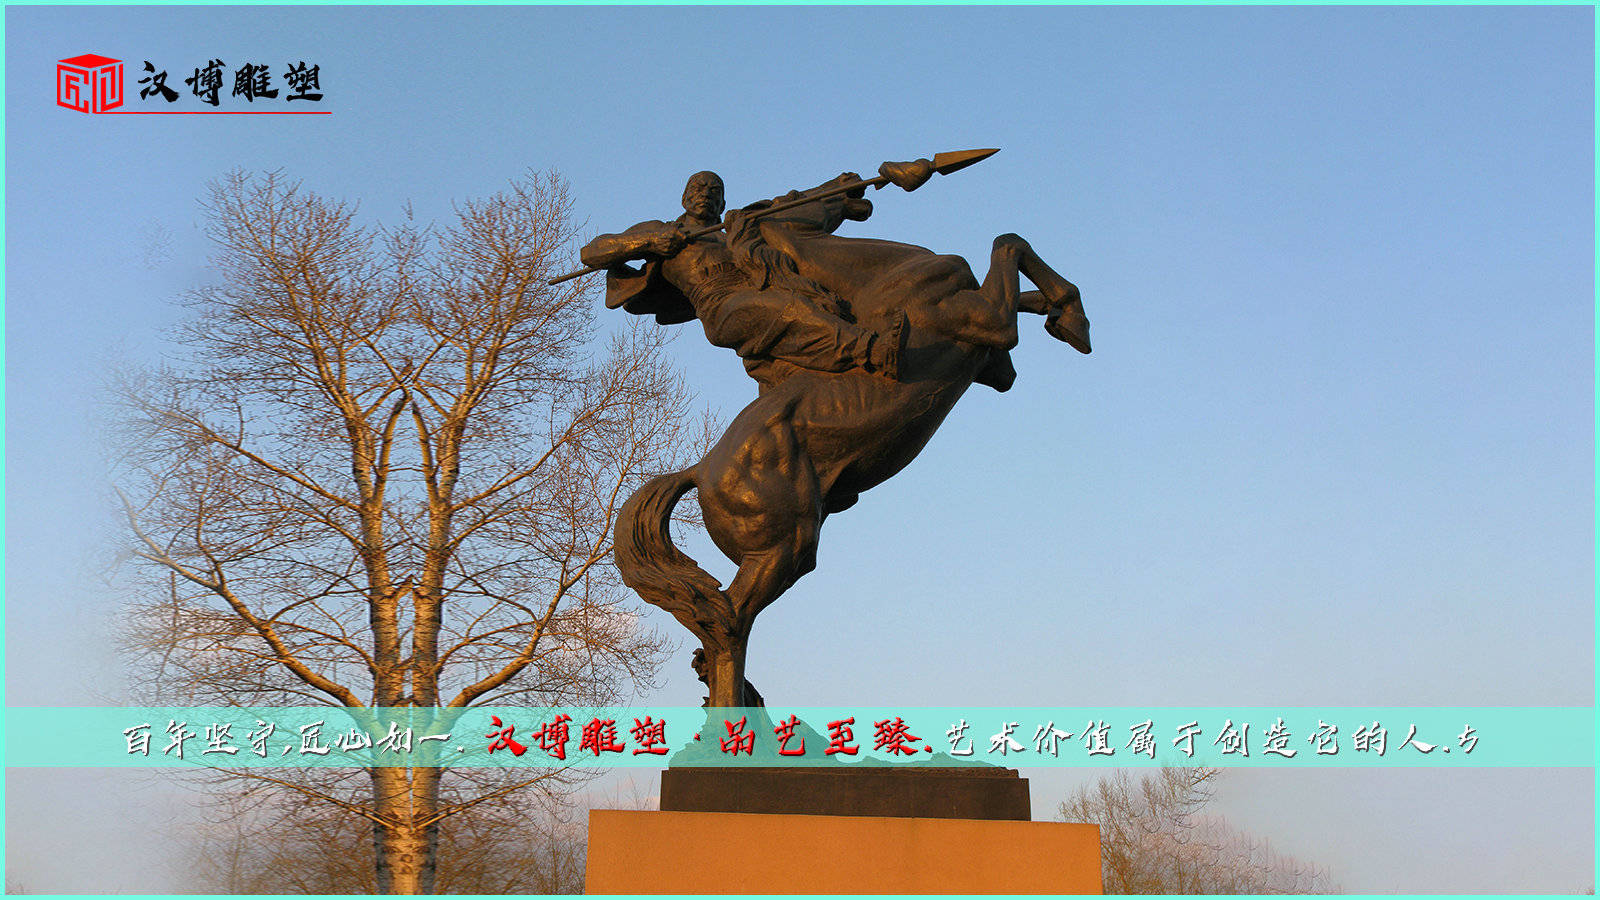 骑马人主题雕塑,雕塑可分为传统雕塑和现代雕塑。